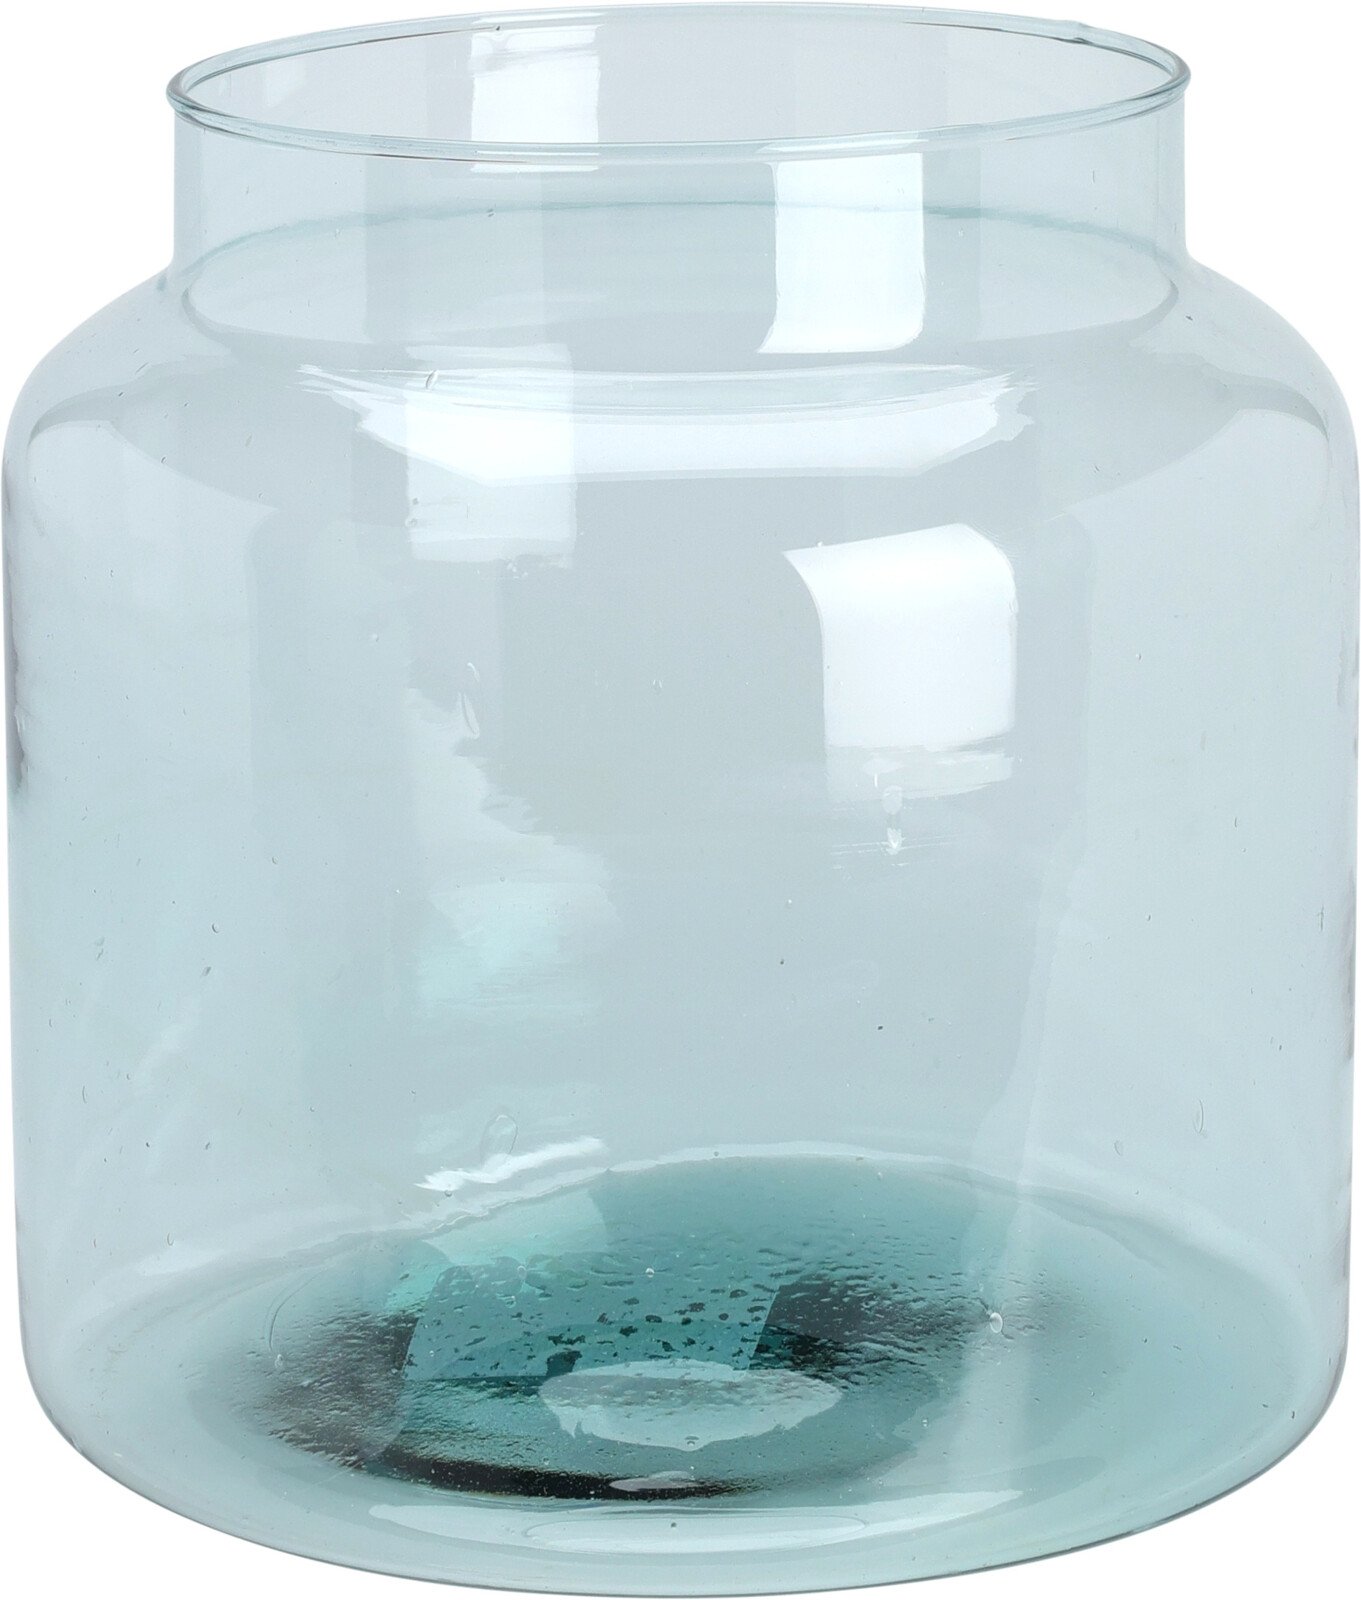 Stiklinė vaza, perdirbto stiklo, šviesiai mėlynos sp., 22 x 22 cm